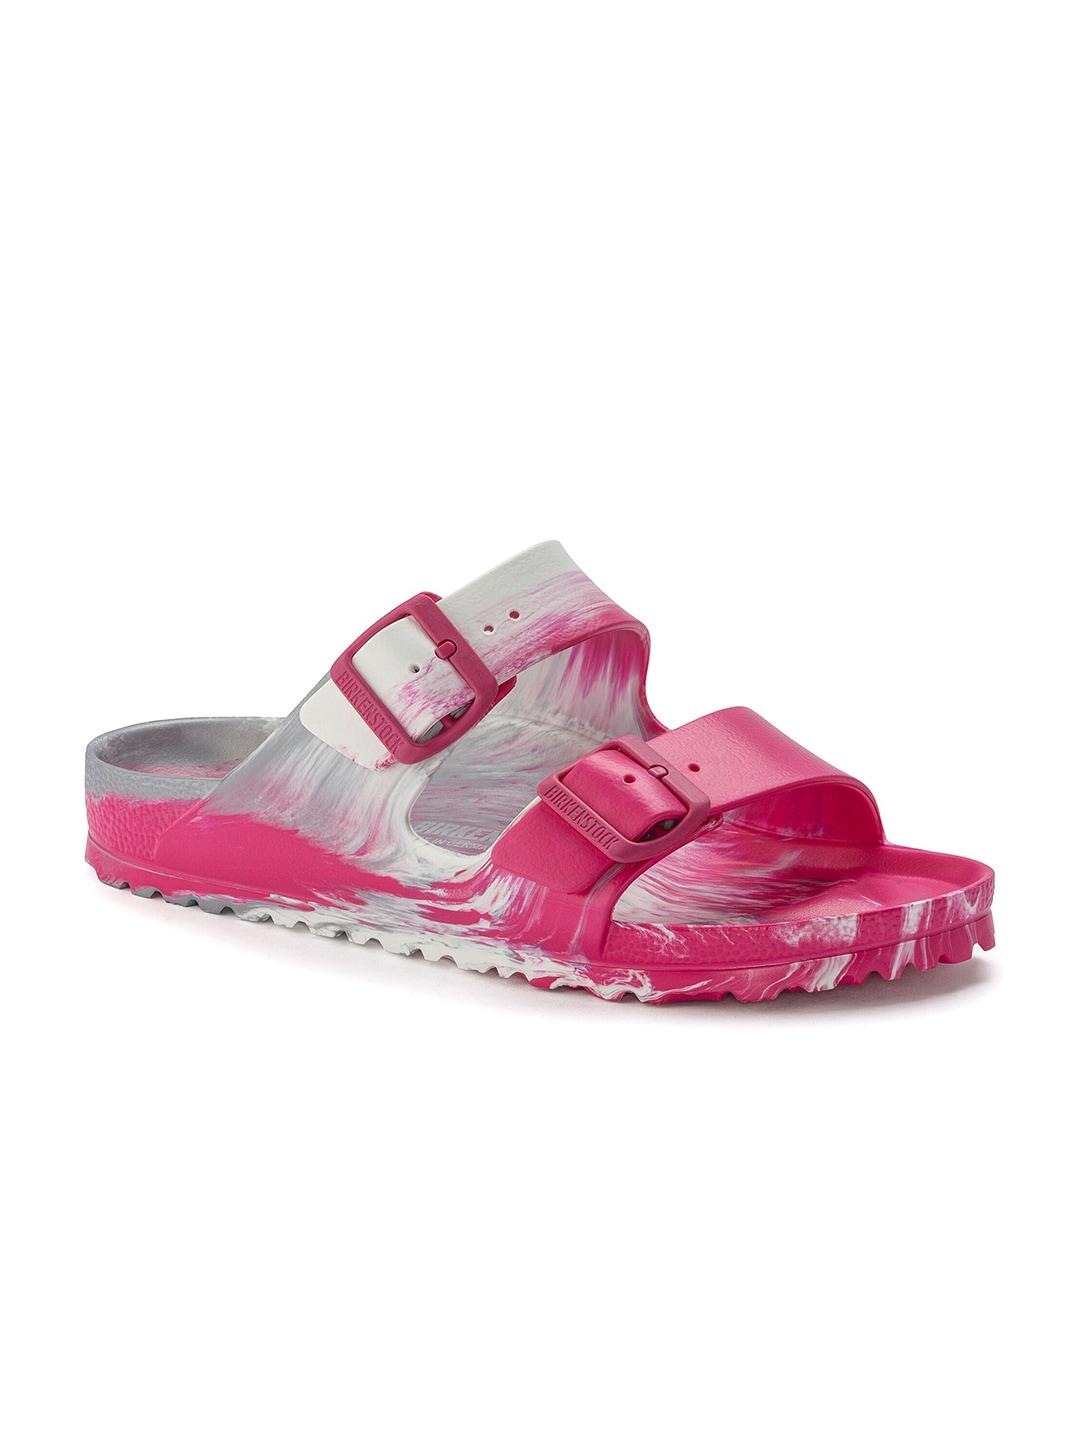 birkenstock-unisex-grey-&-pink-arizona-comfort-sandals